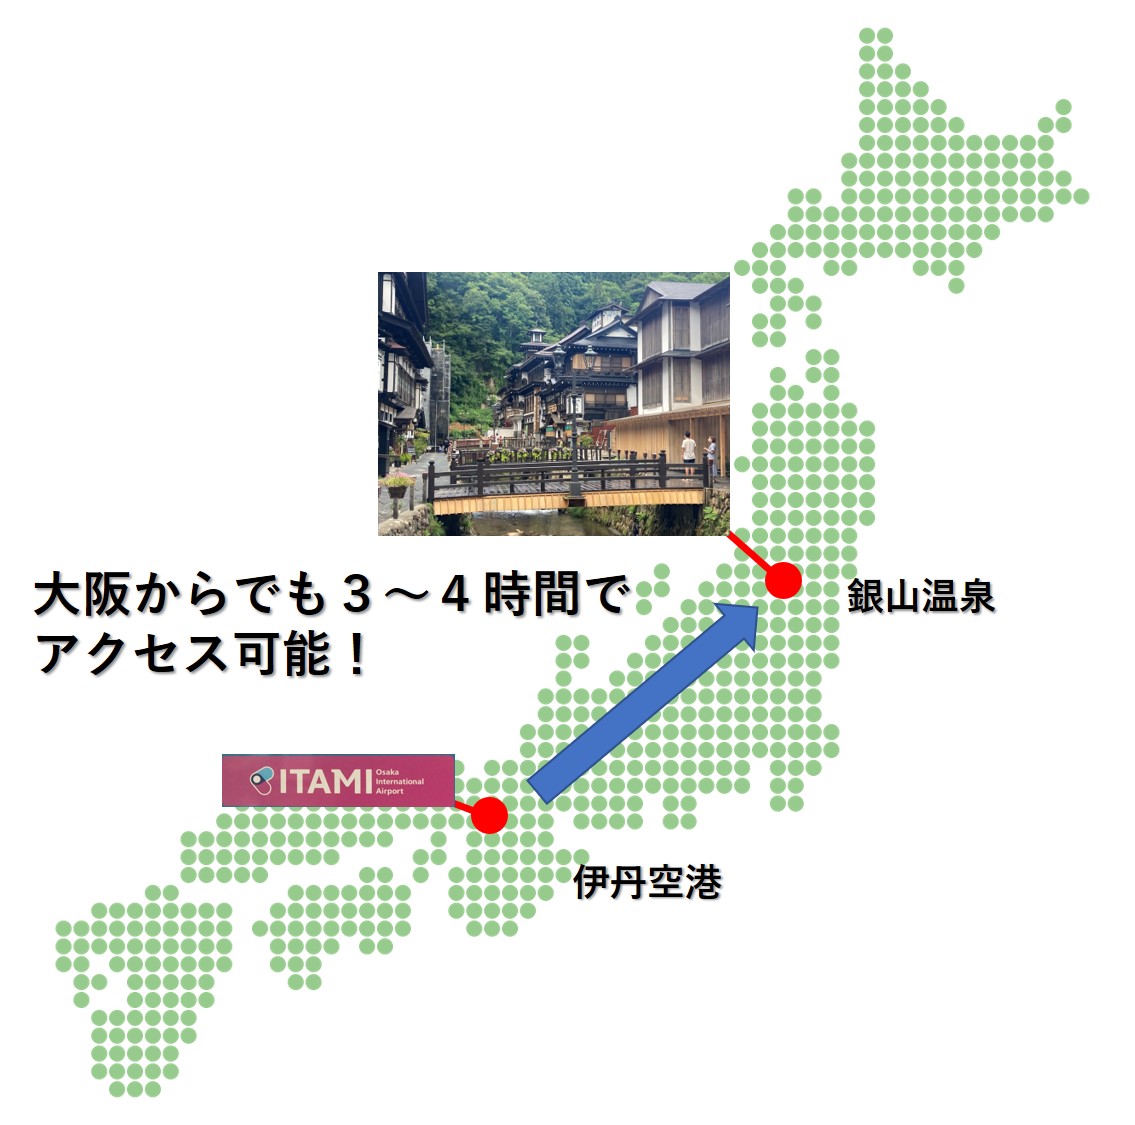 大阪から銀山温泉へ３ ４時間でアクセス可能 移動時間を最短にする方法を紹介 たびすぽ